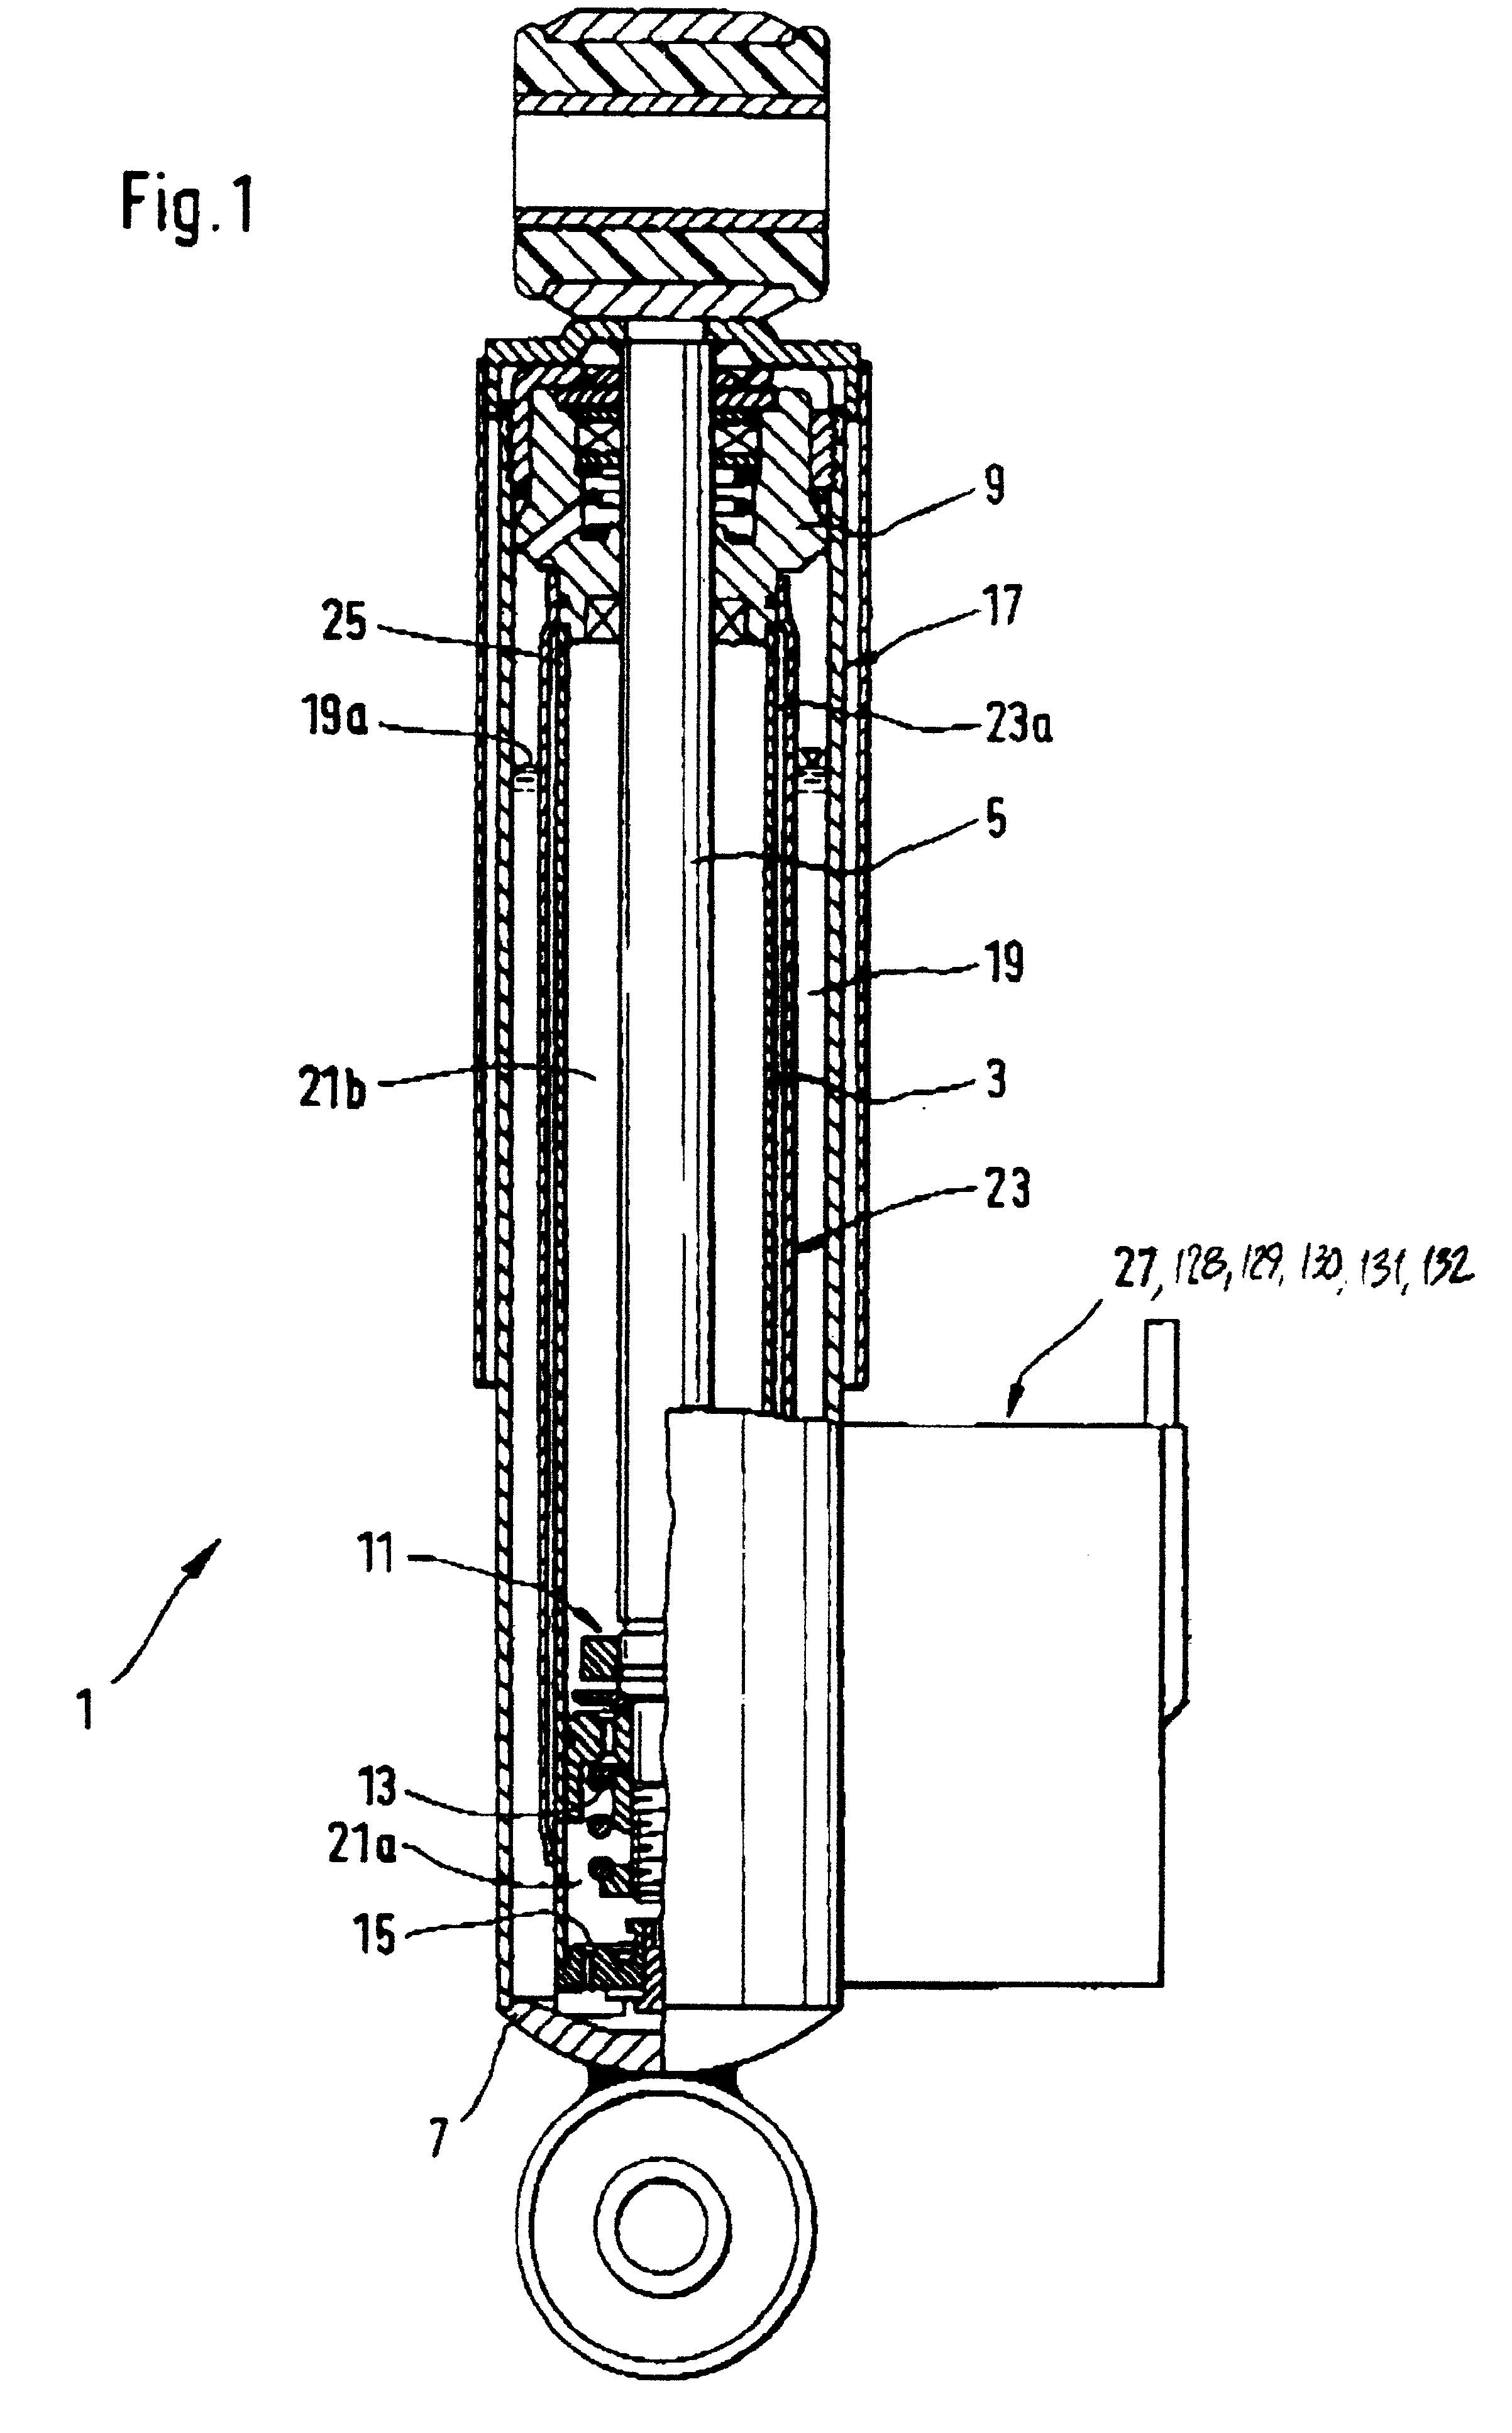 Pressure-dependent valve for a vibration damper